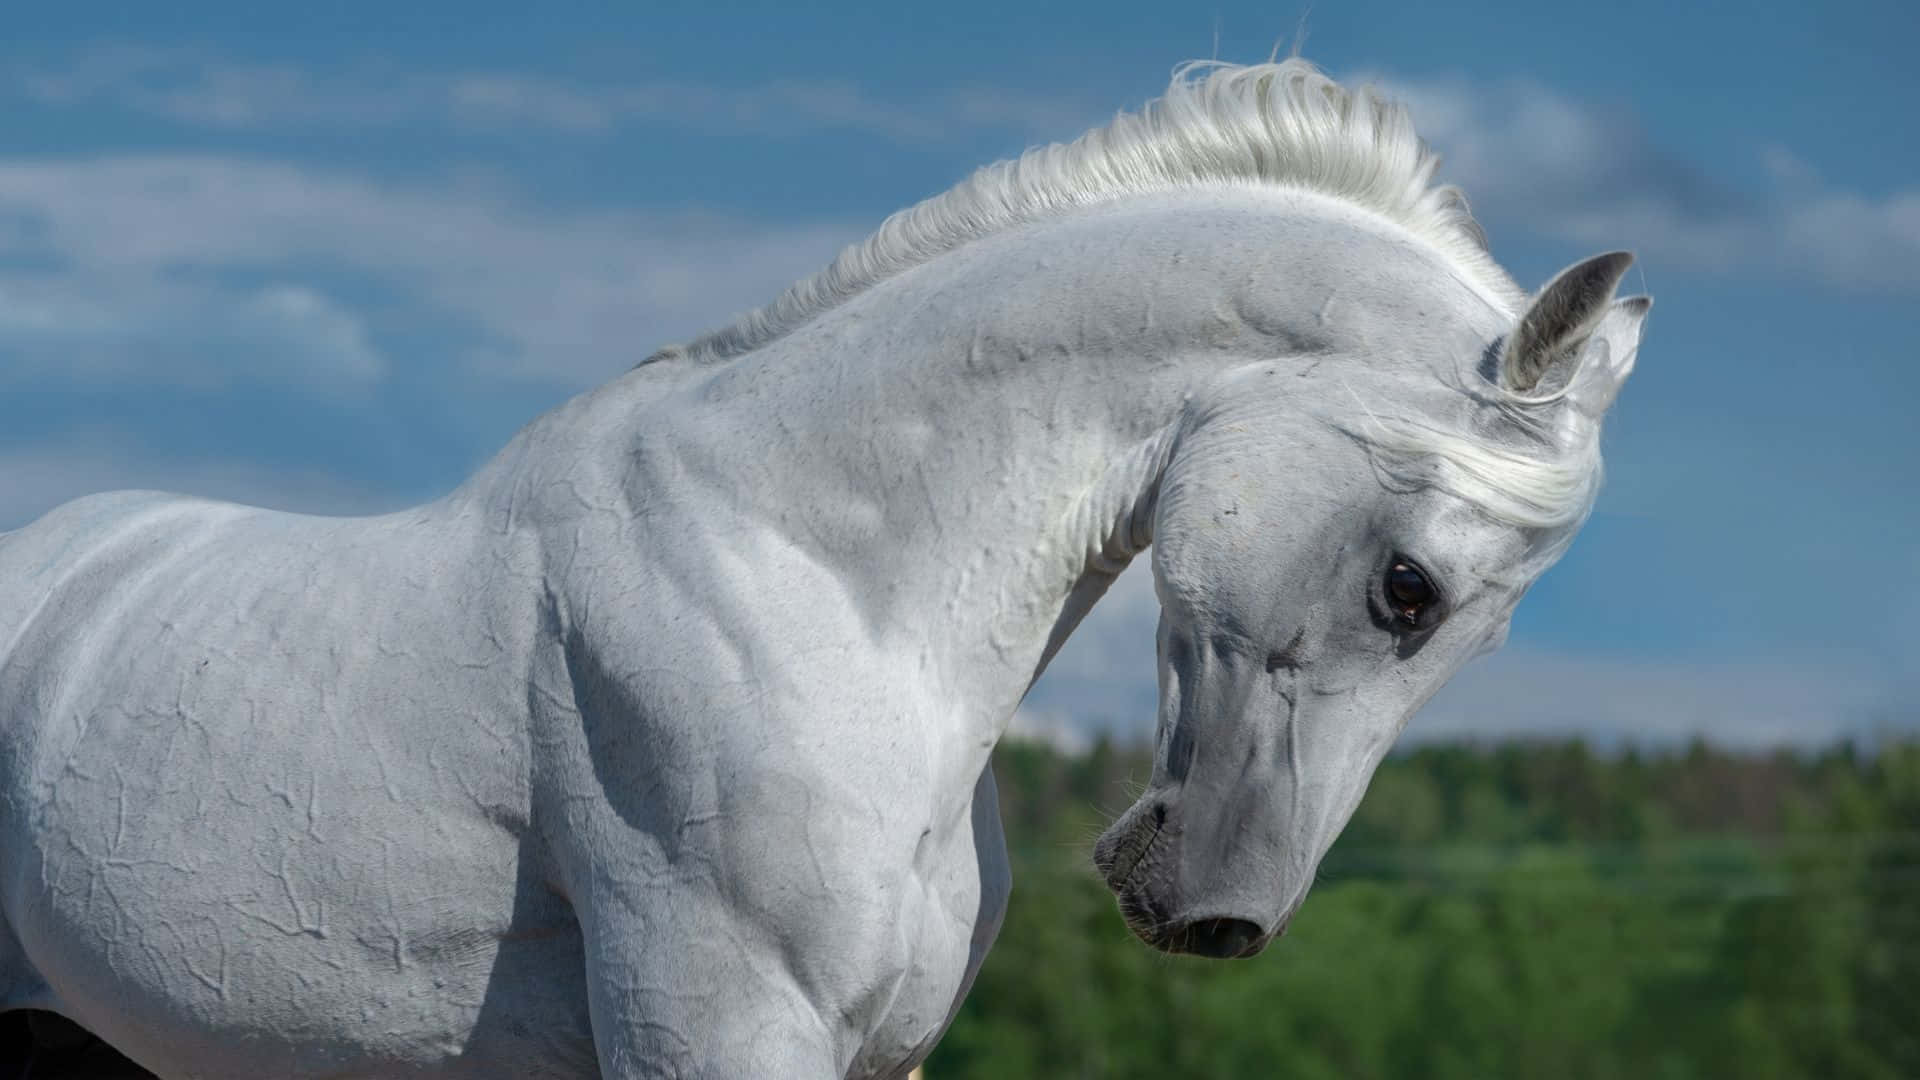 Breathtaking Beauty of an Arabian Horse